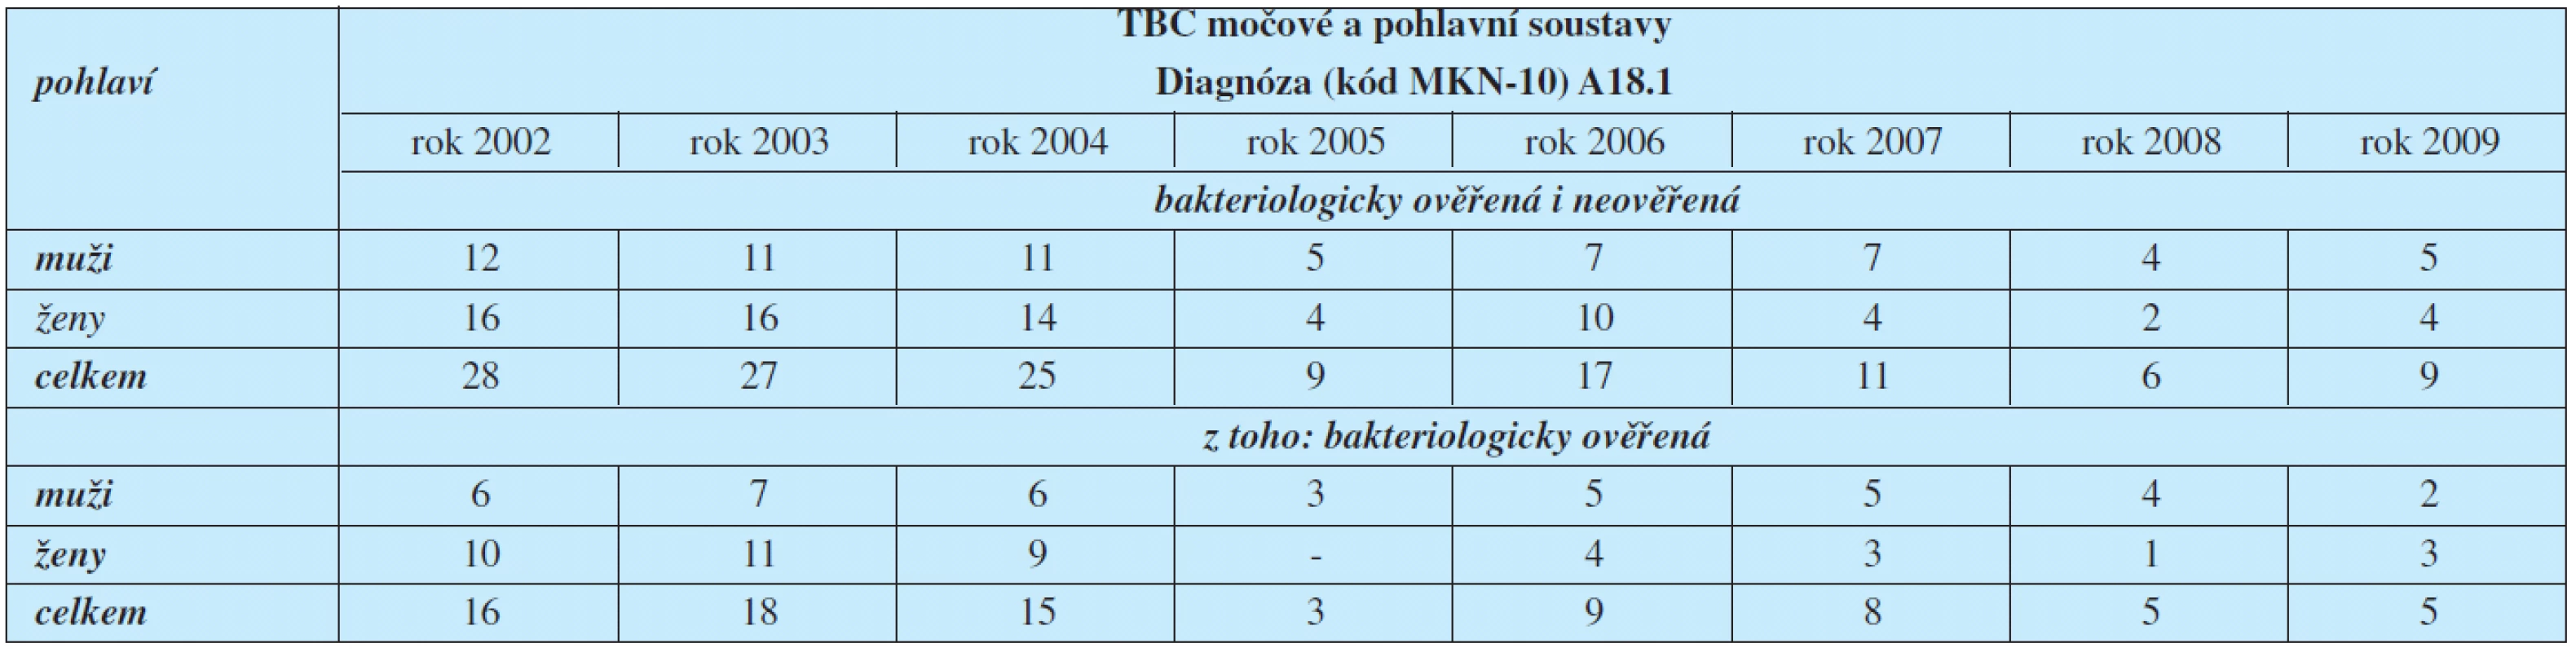 Hlášená onemocnění tuberkulózy močové a pohlavní soustavy podle klasifikační diagnózy (MKN-10)